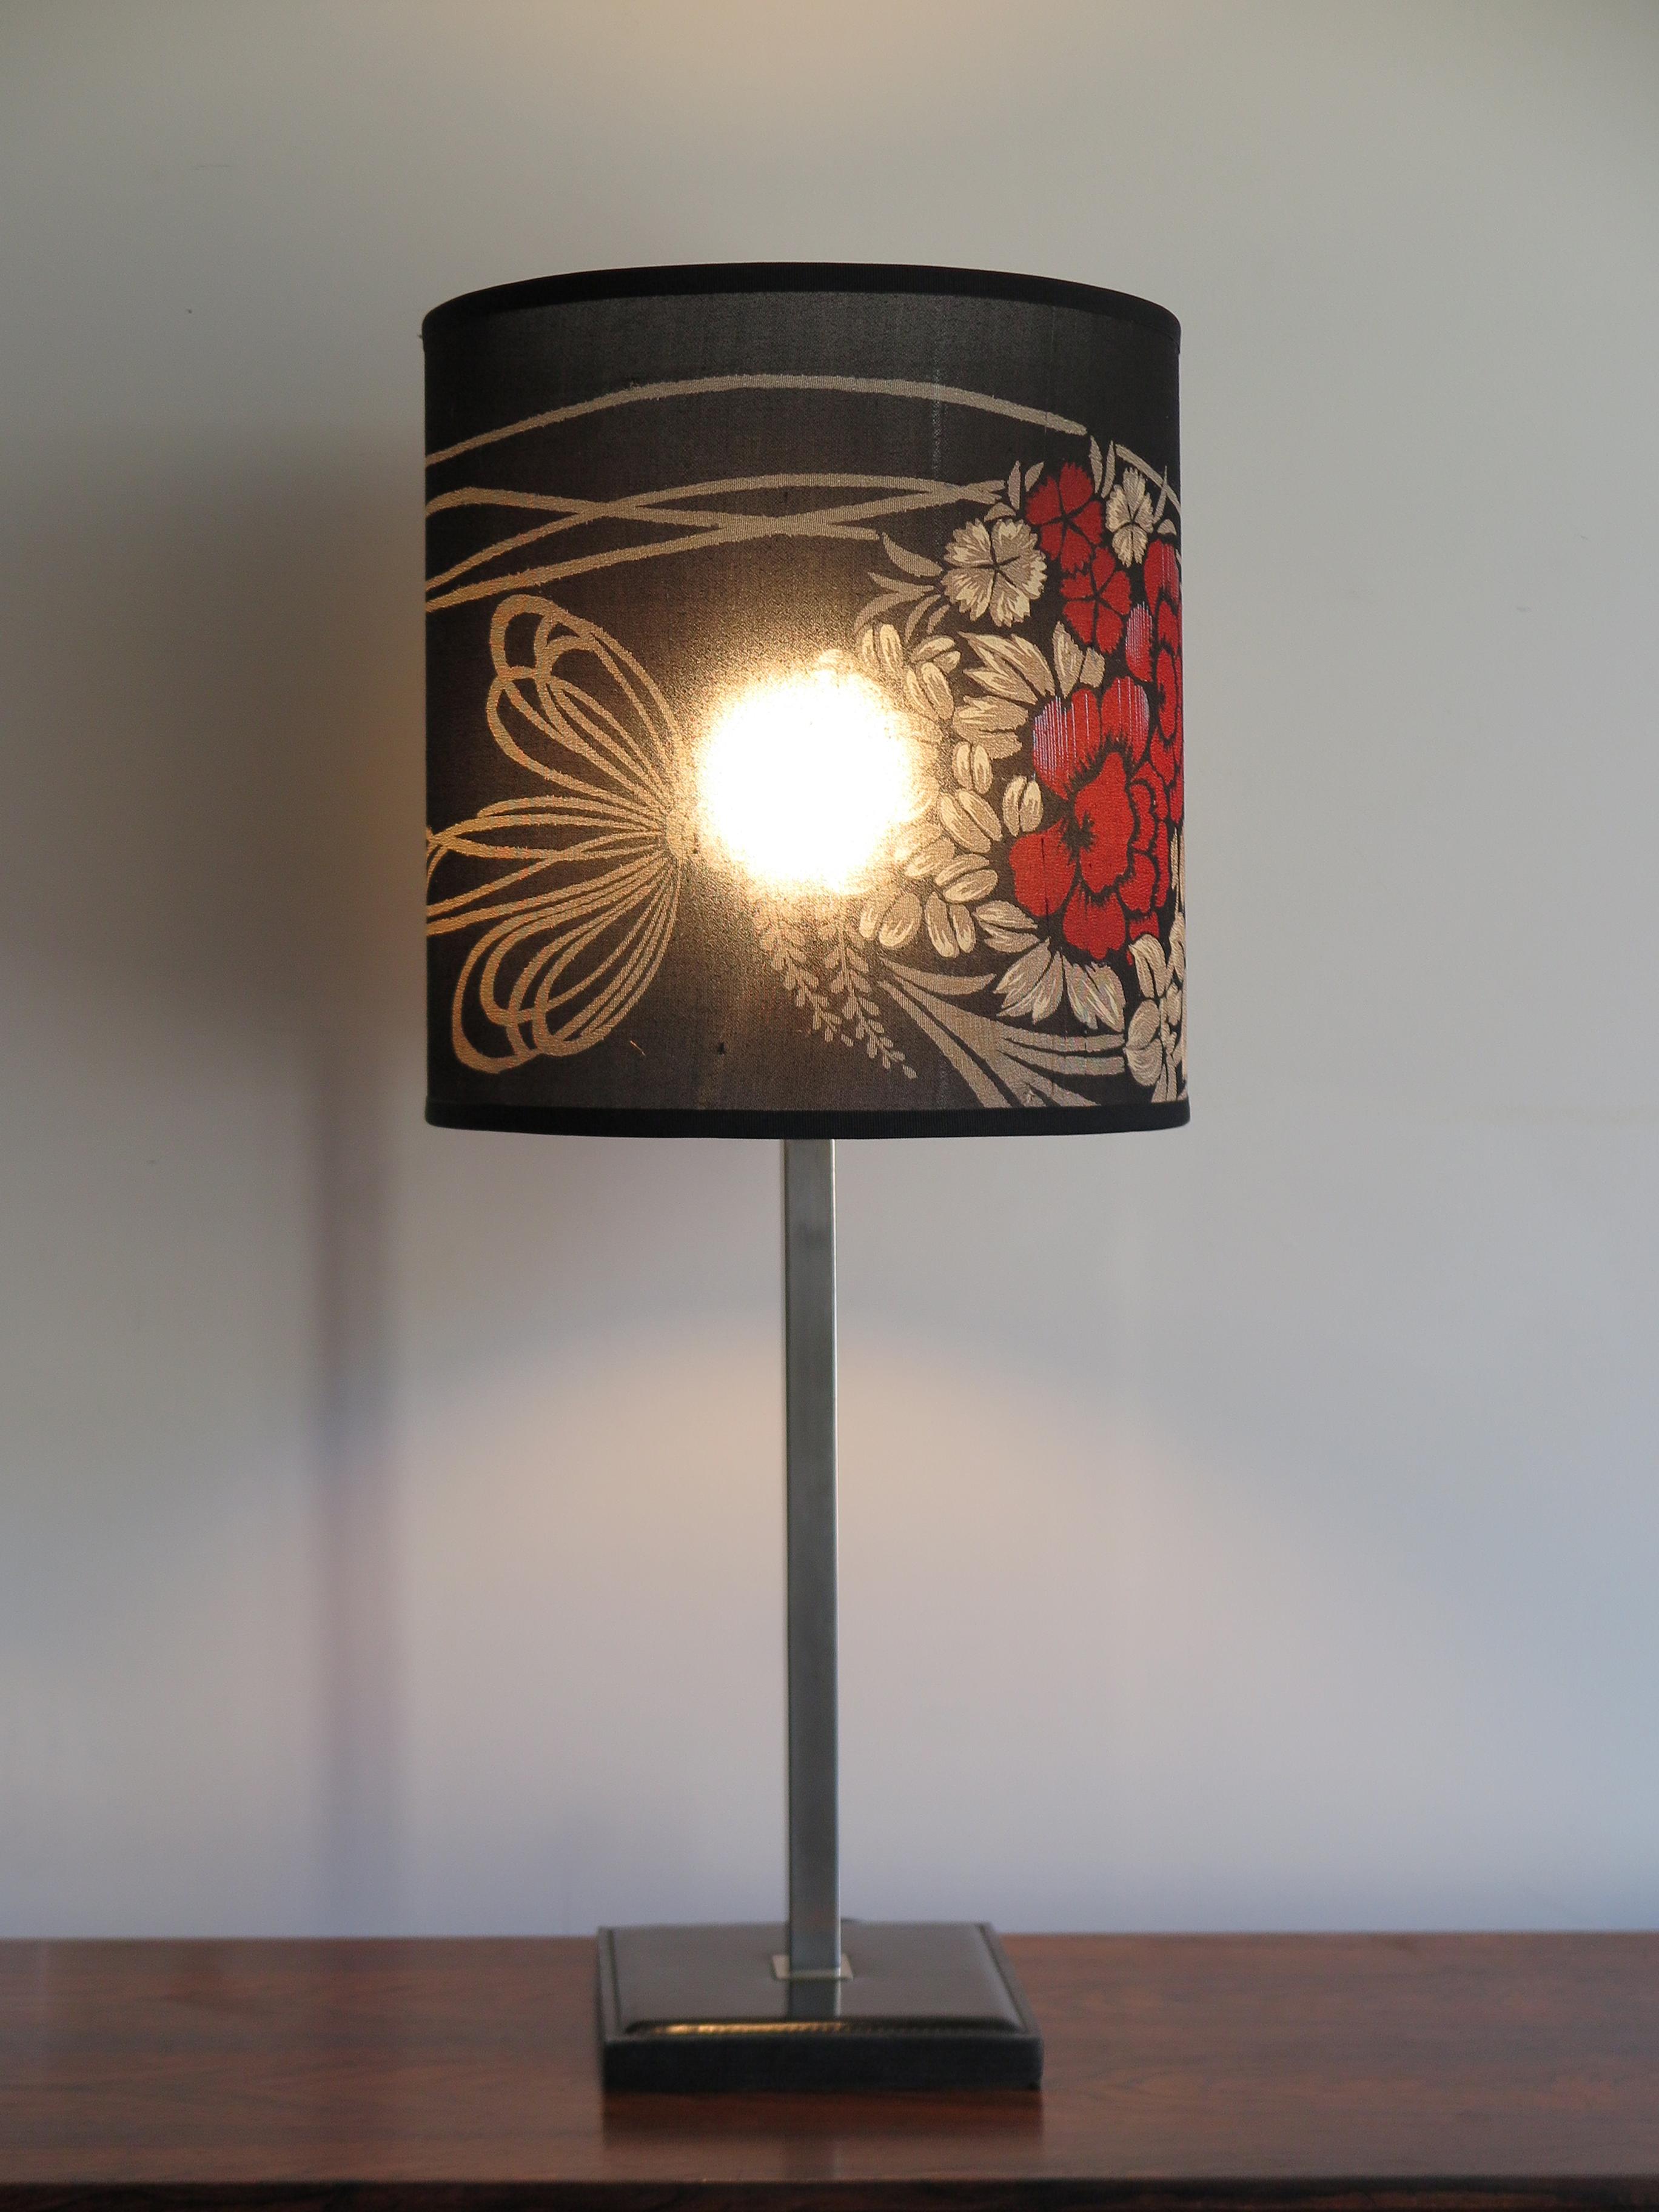 Lampe de table ou de bureau conçue par Delvaux et fabriquée en Belgique avec base en cuir, structure chromée et abat-jour orientable réalisé à neuf avec un kimono japonais en soie ancienne, années 1960.

Signature du producteur sous la